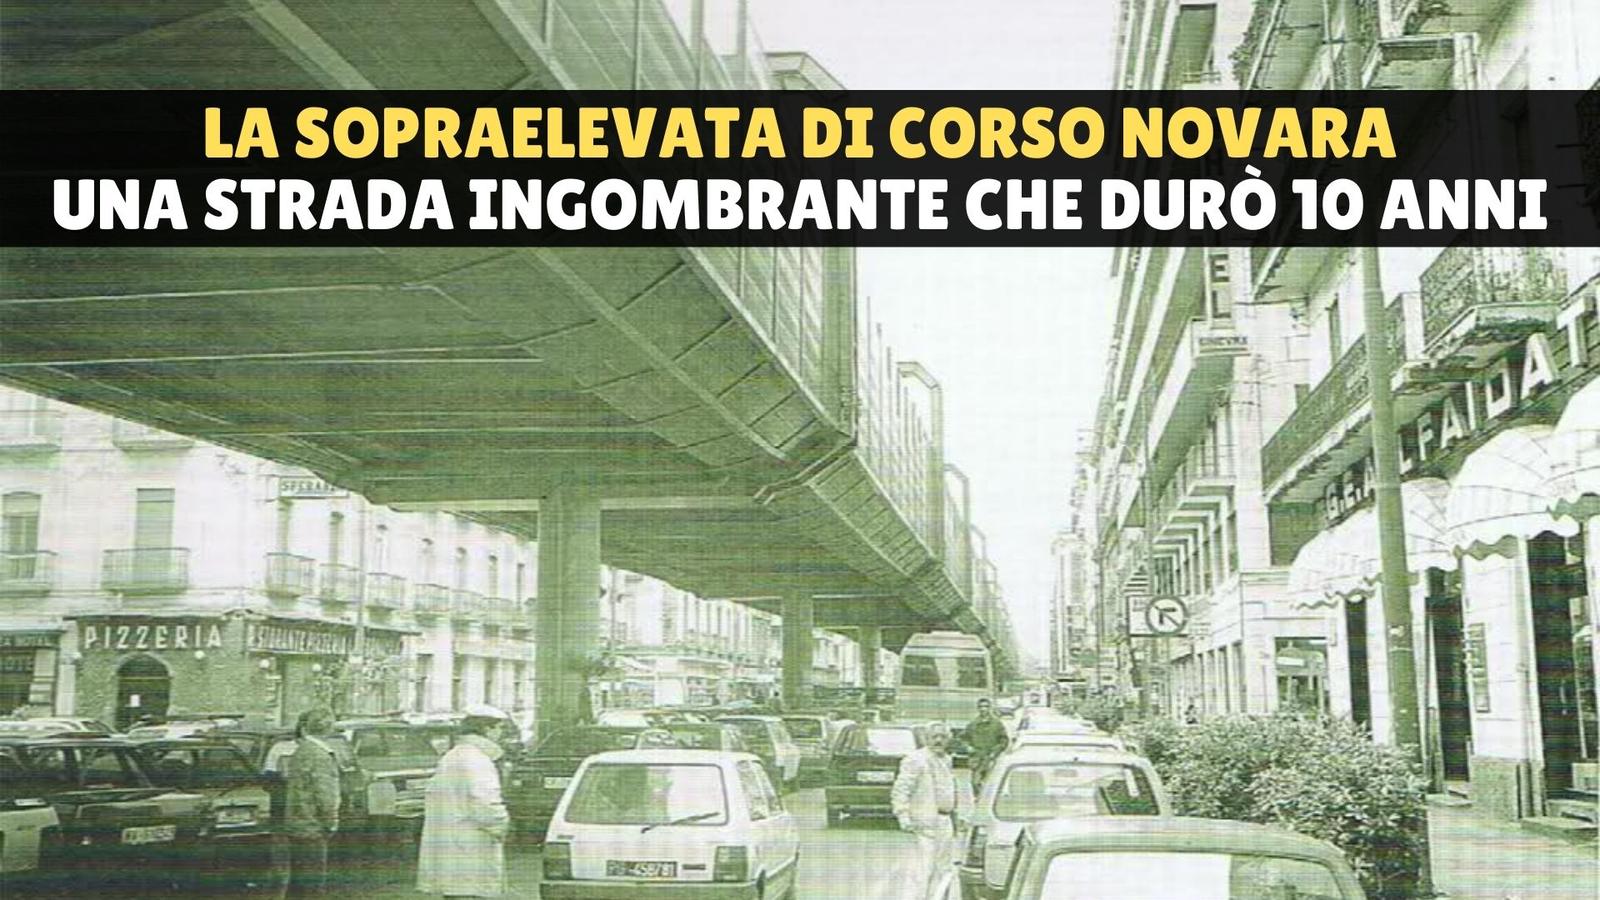 La sopraelevata di Corso Novara, la strada degli orrori che per 8 anni affogò la città